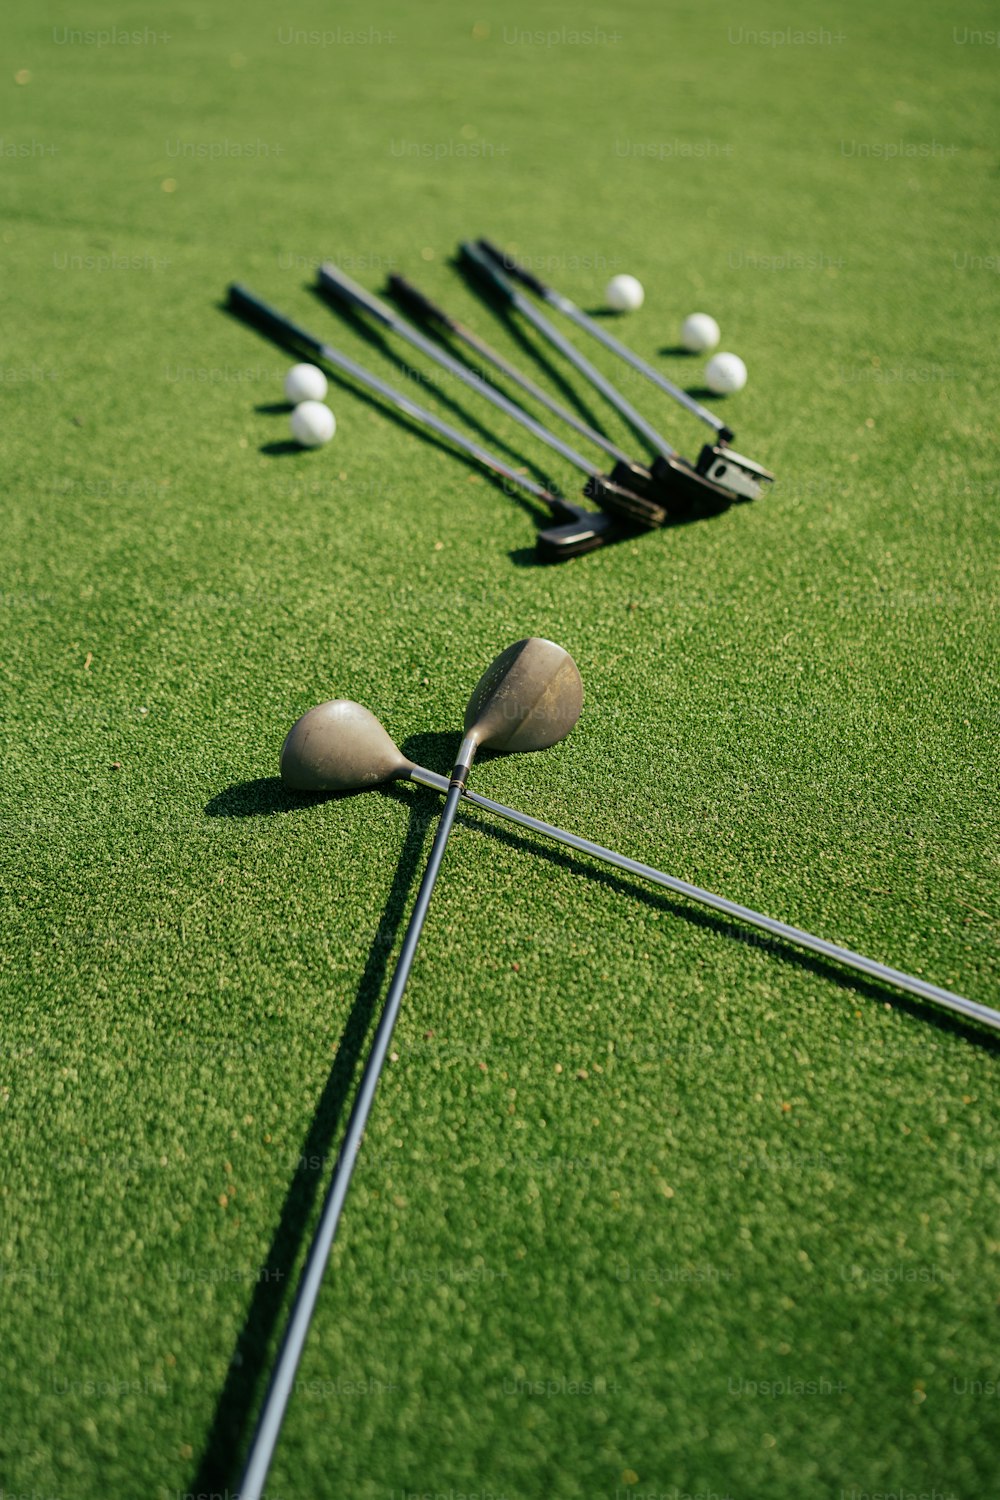 Un grupo de palos de golf y pelotas tendidas en el césped